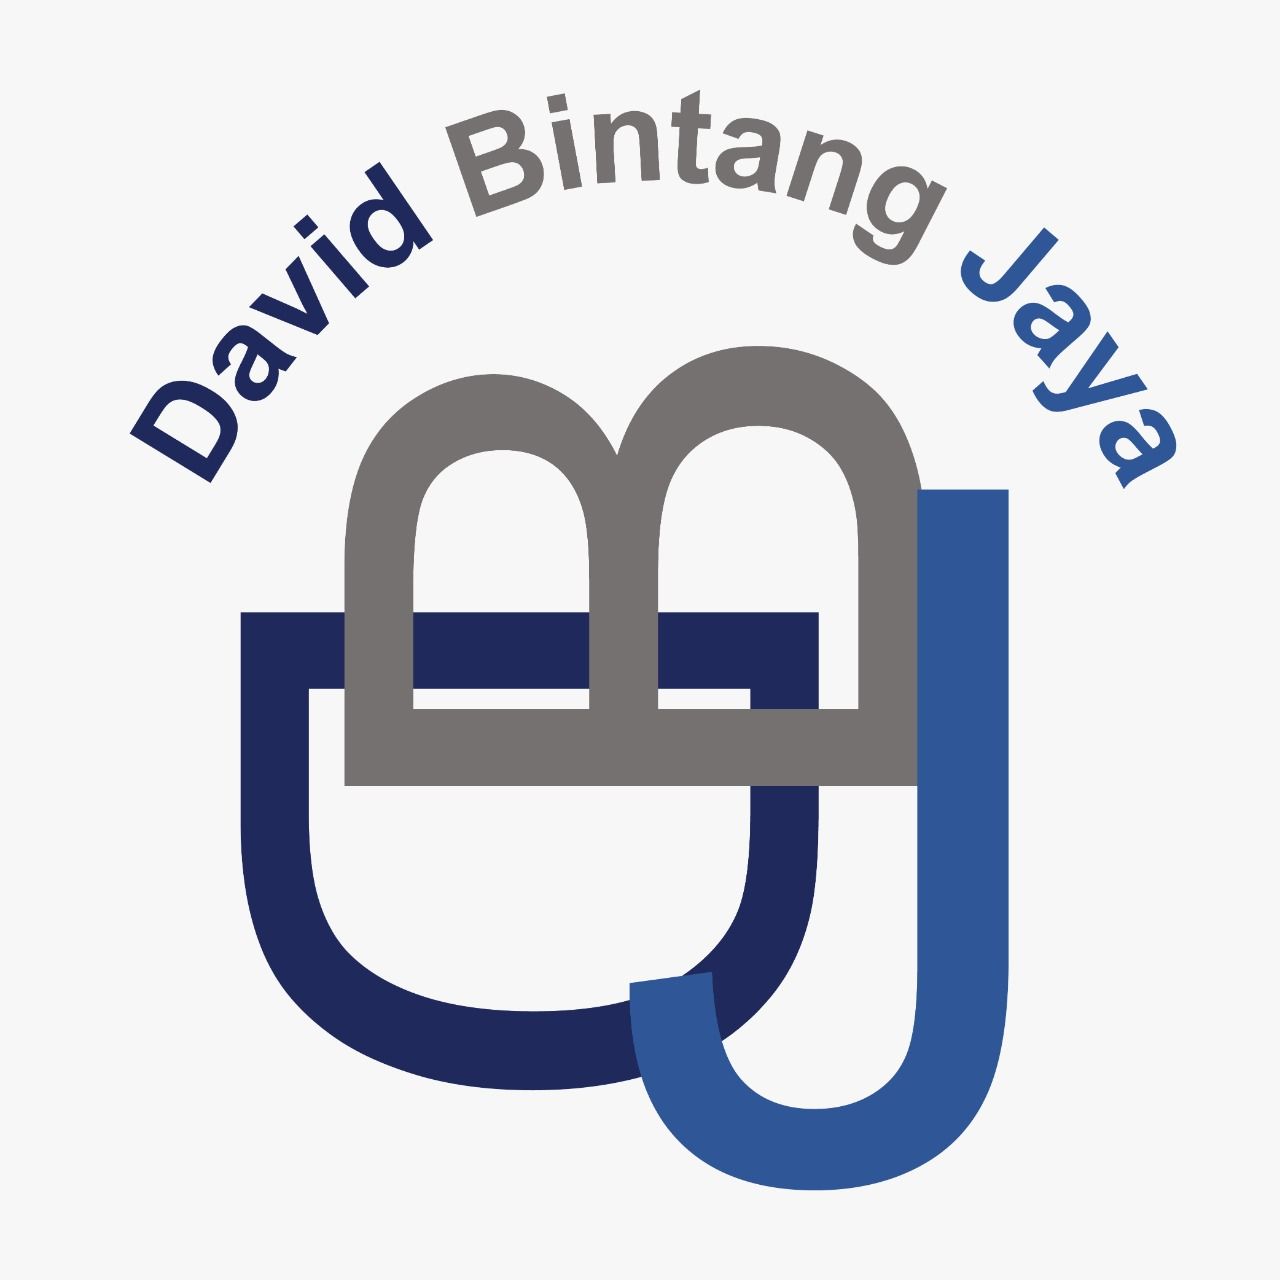 Pt David Bintang Jaya logo